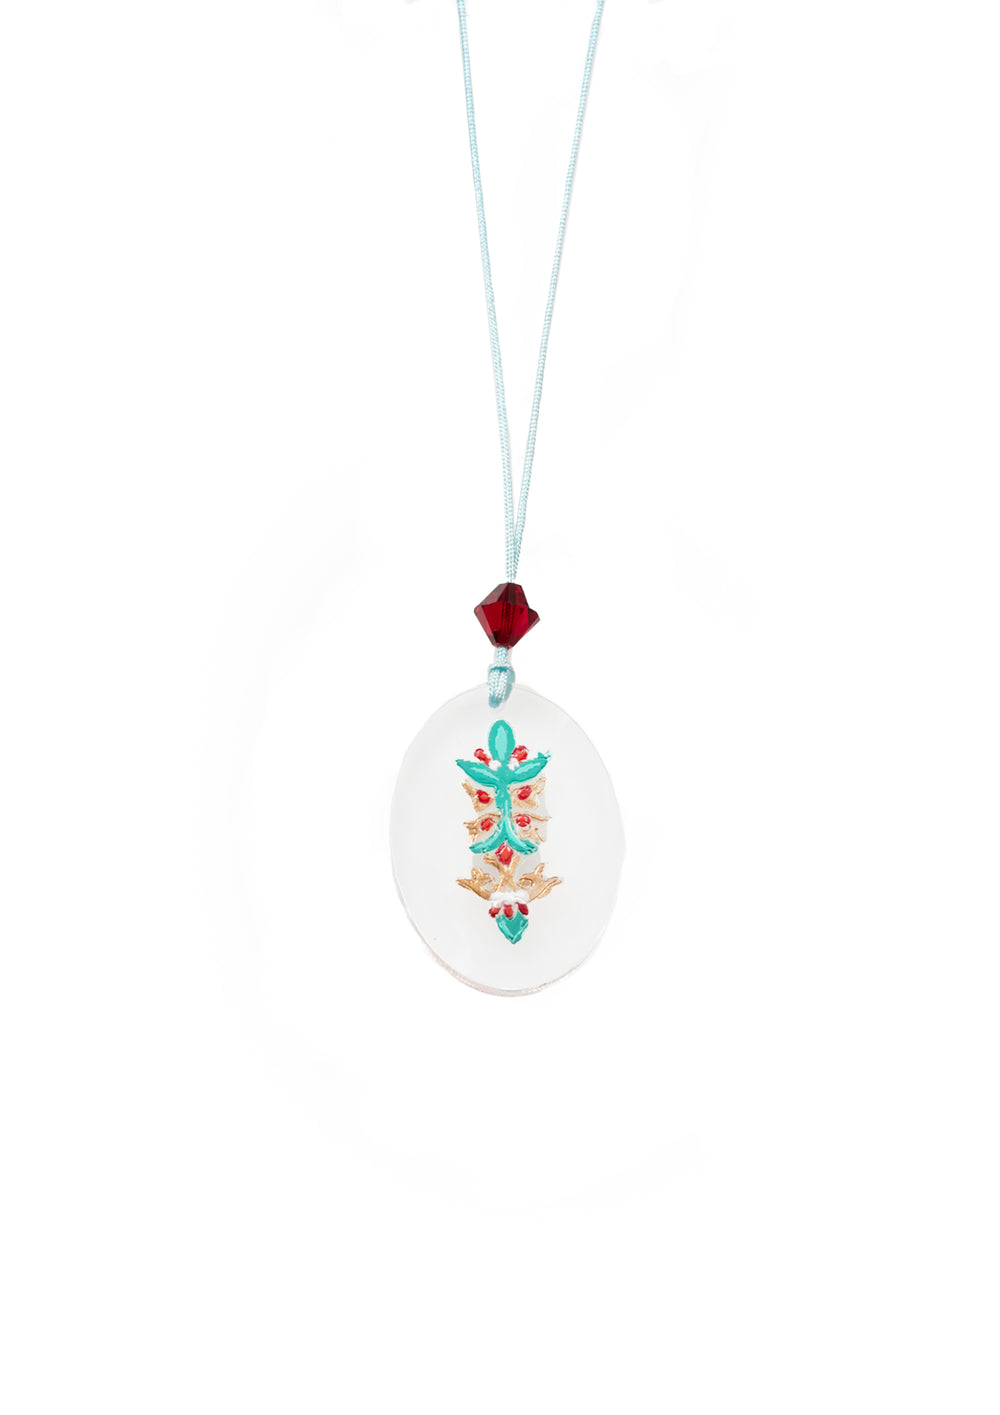 Oval pendant with repoussé flower